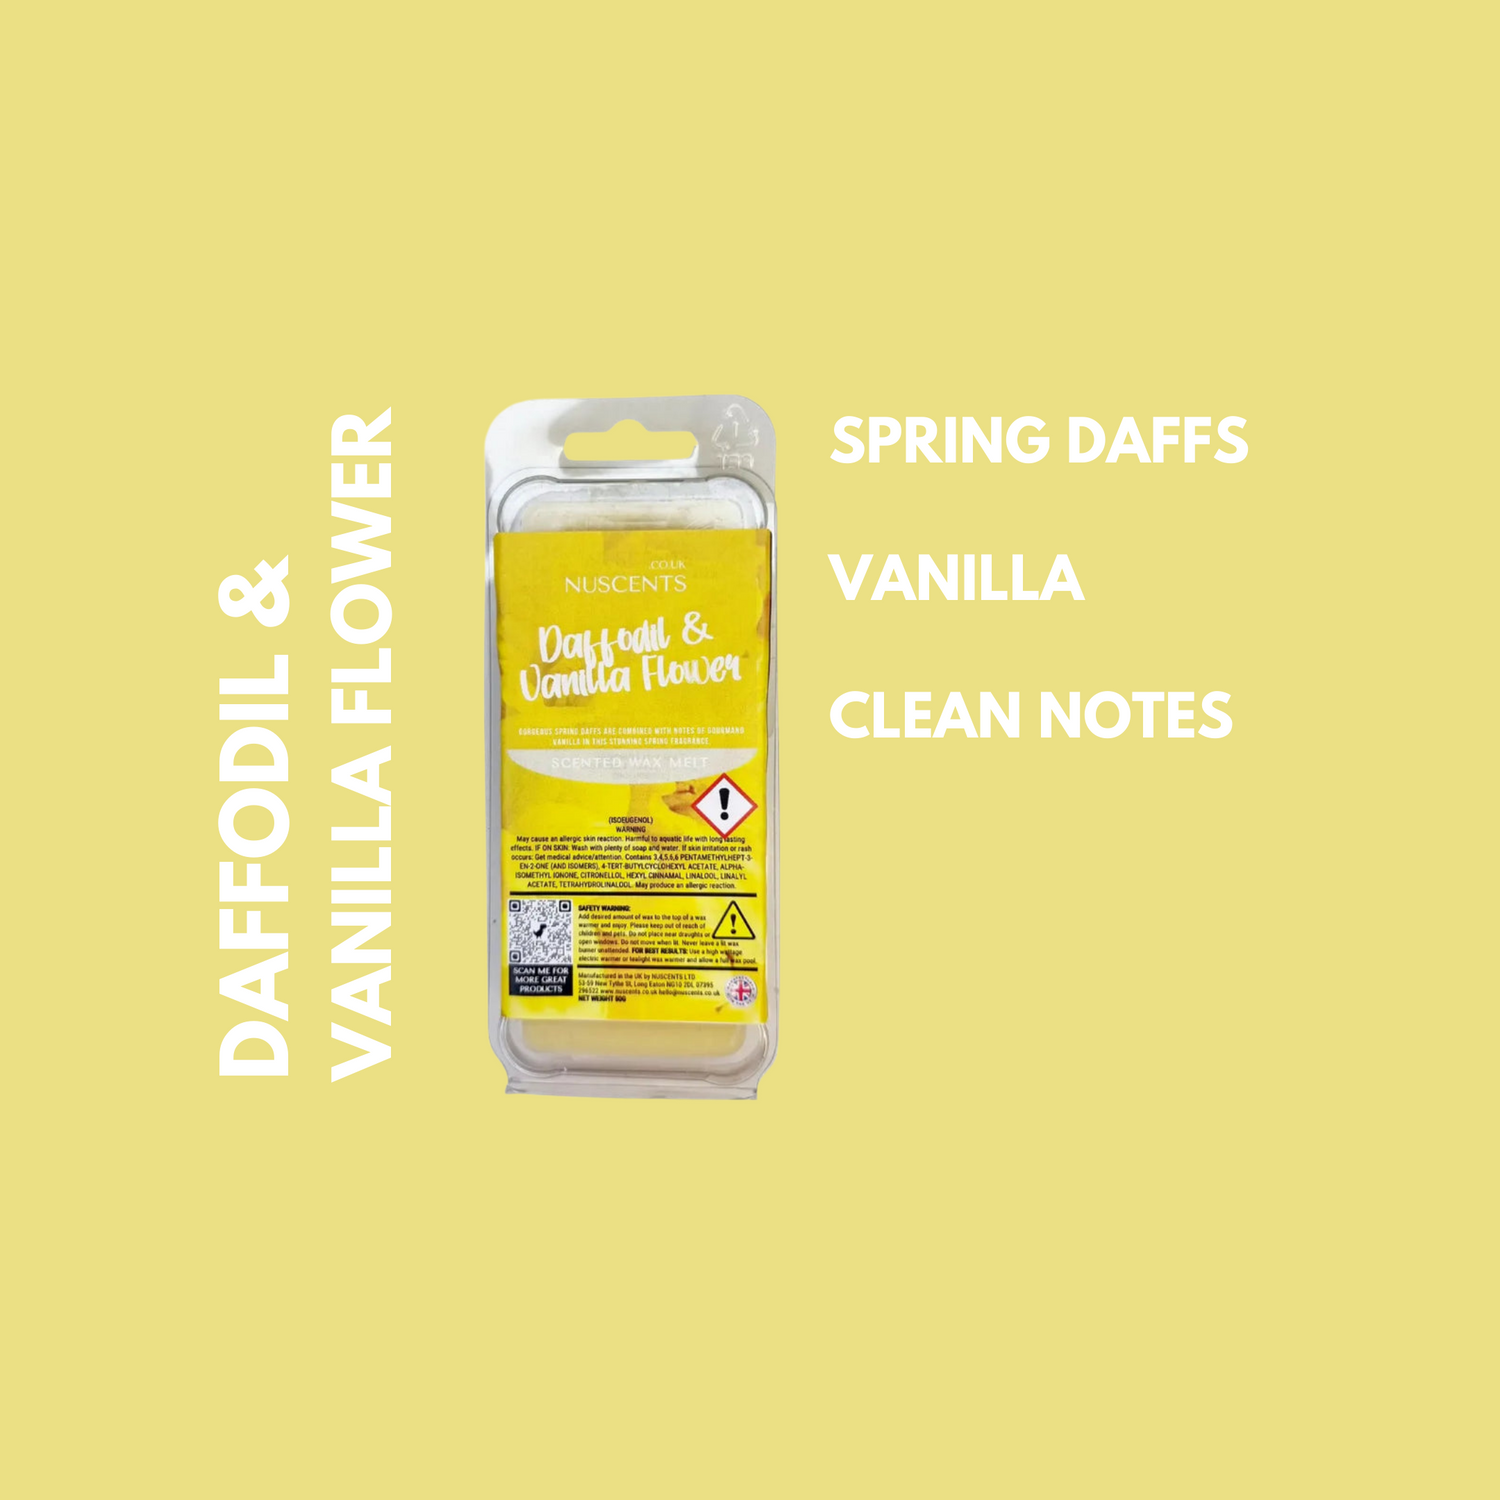 Daffodil & Vanilla Flower Wax Melt Scent Notes